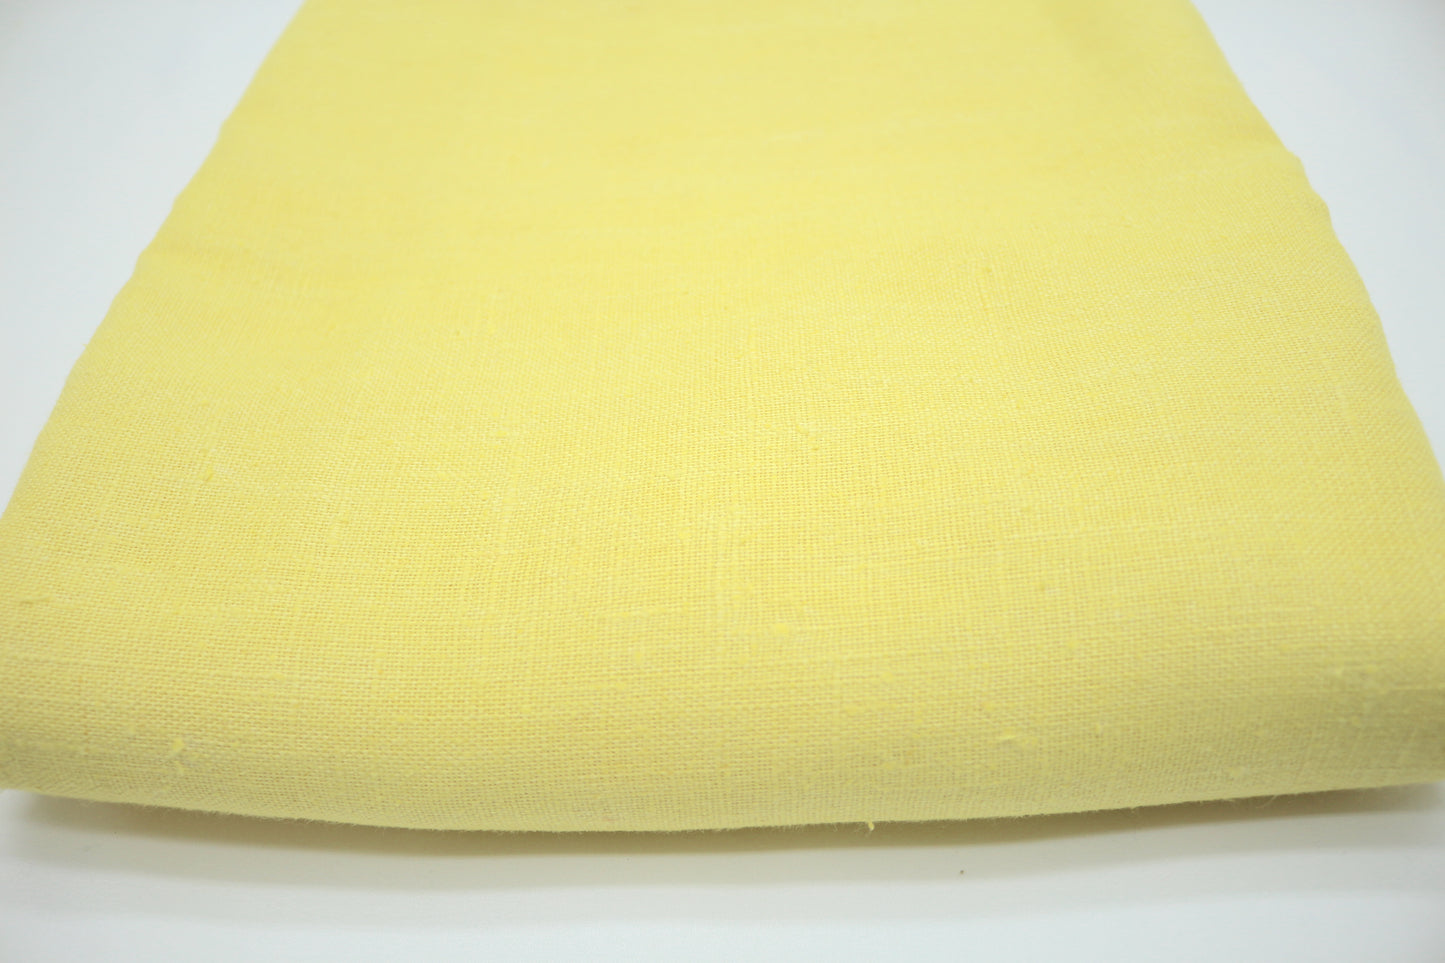 Butter is Best Yellow Linen Blend Fabric 43"x 4.25 yds